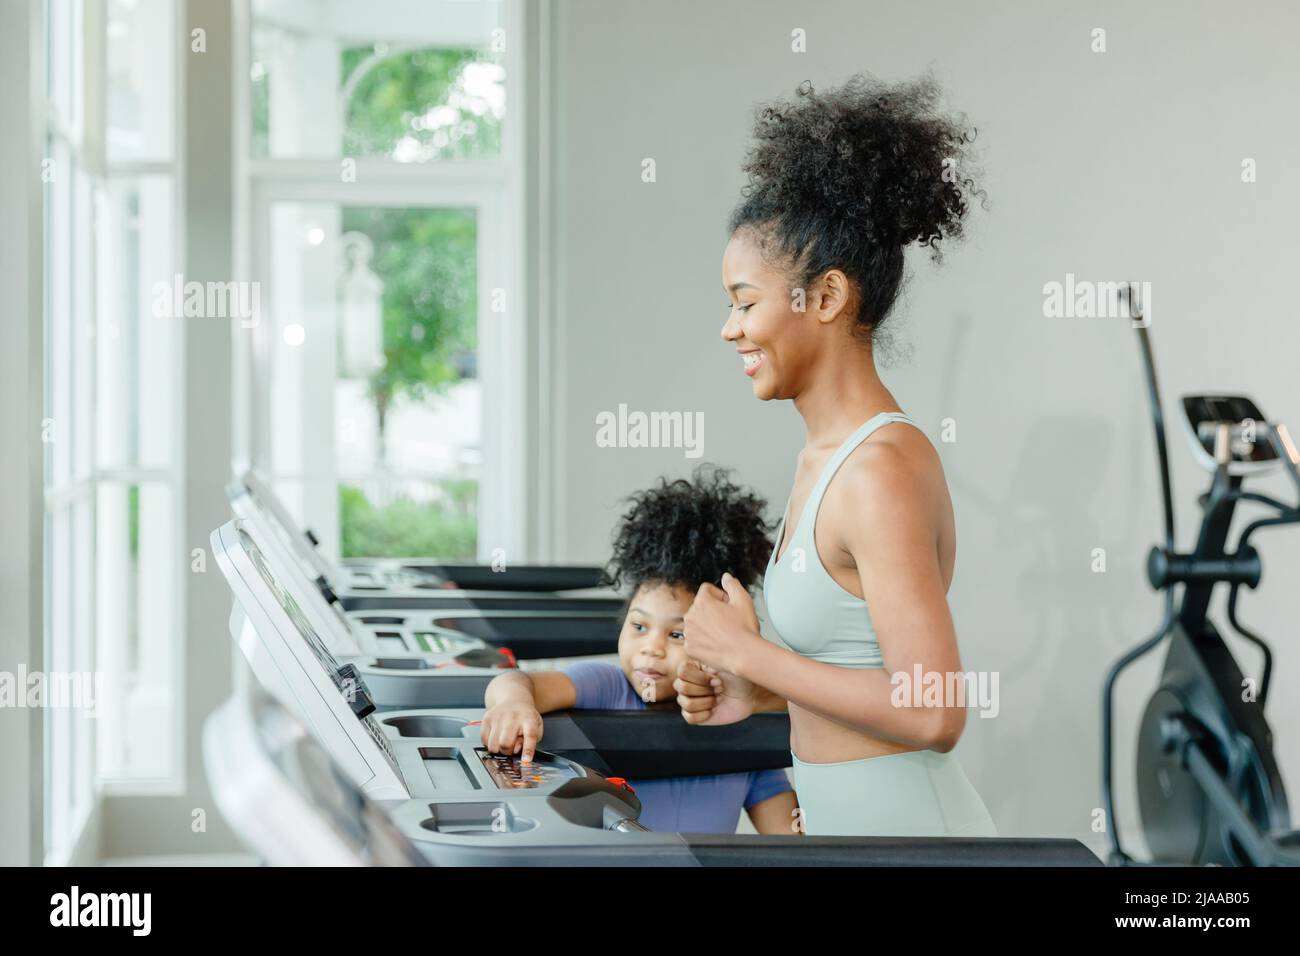 sorella teen ragazza nera che corre sul tapis roulant sorriso felice con il bambino. Foto Stock